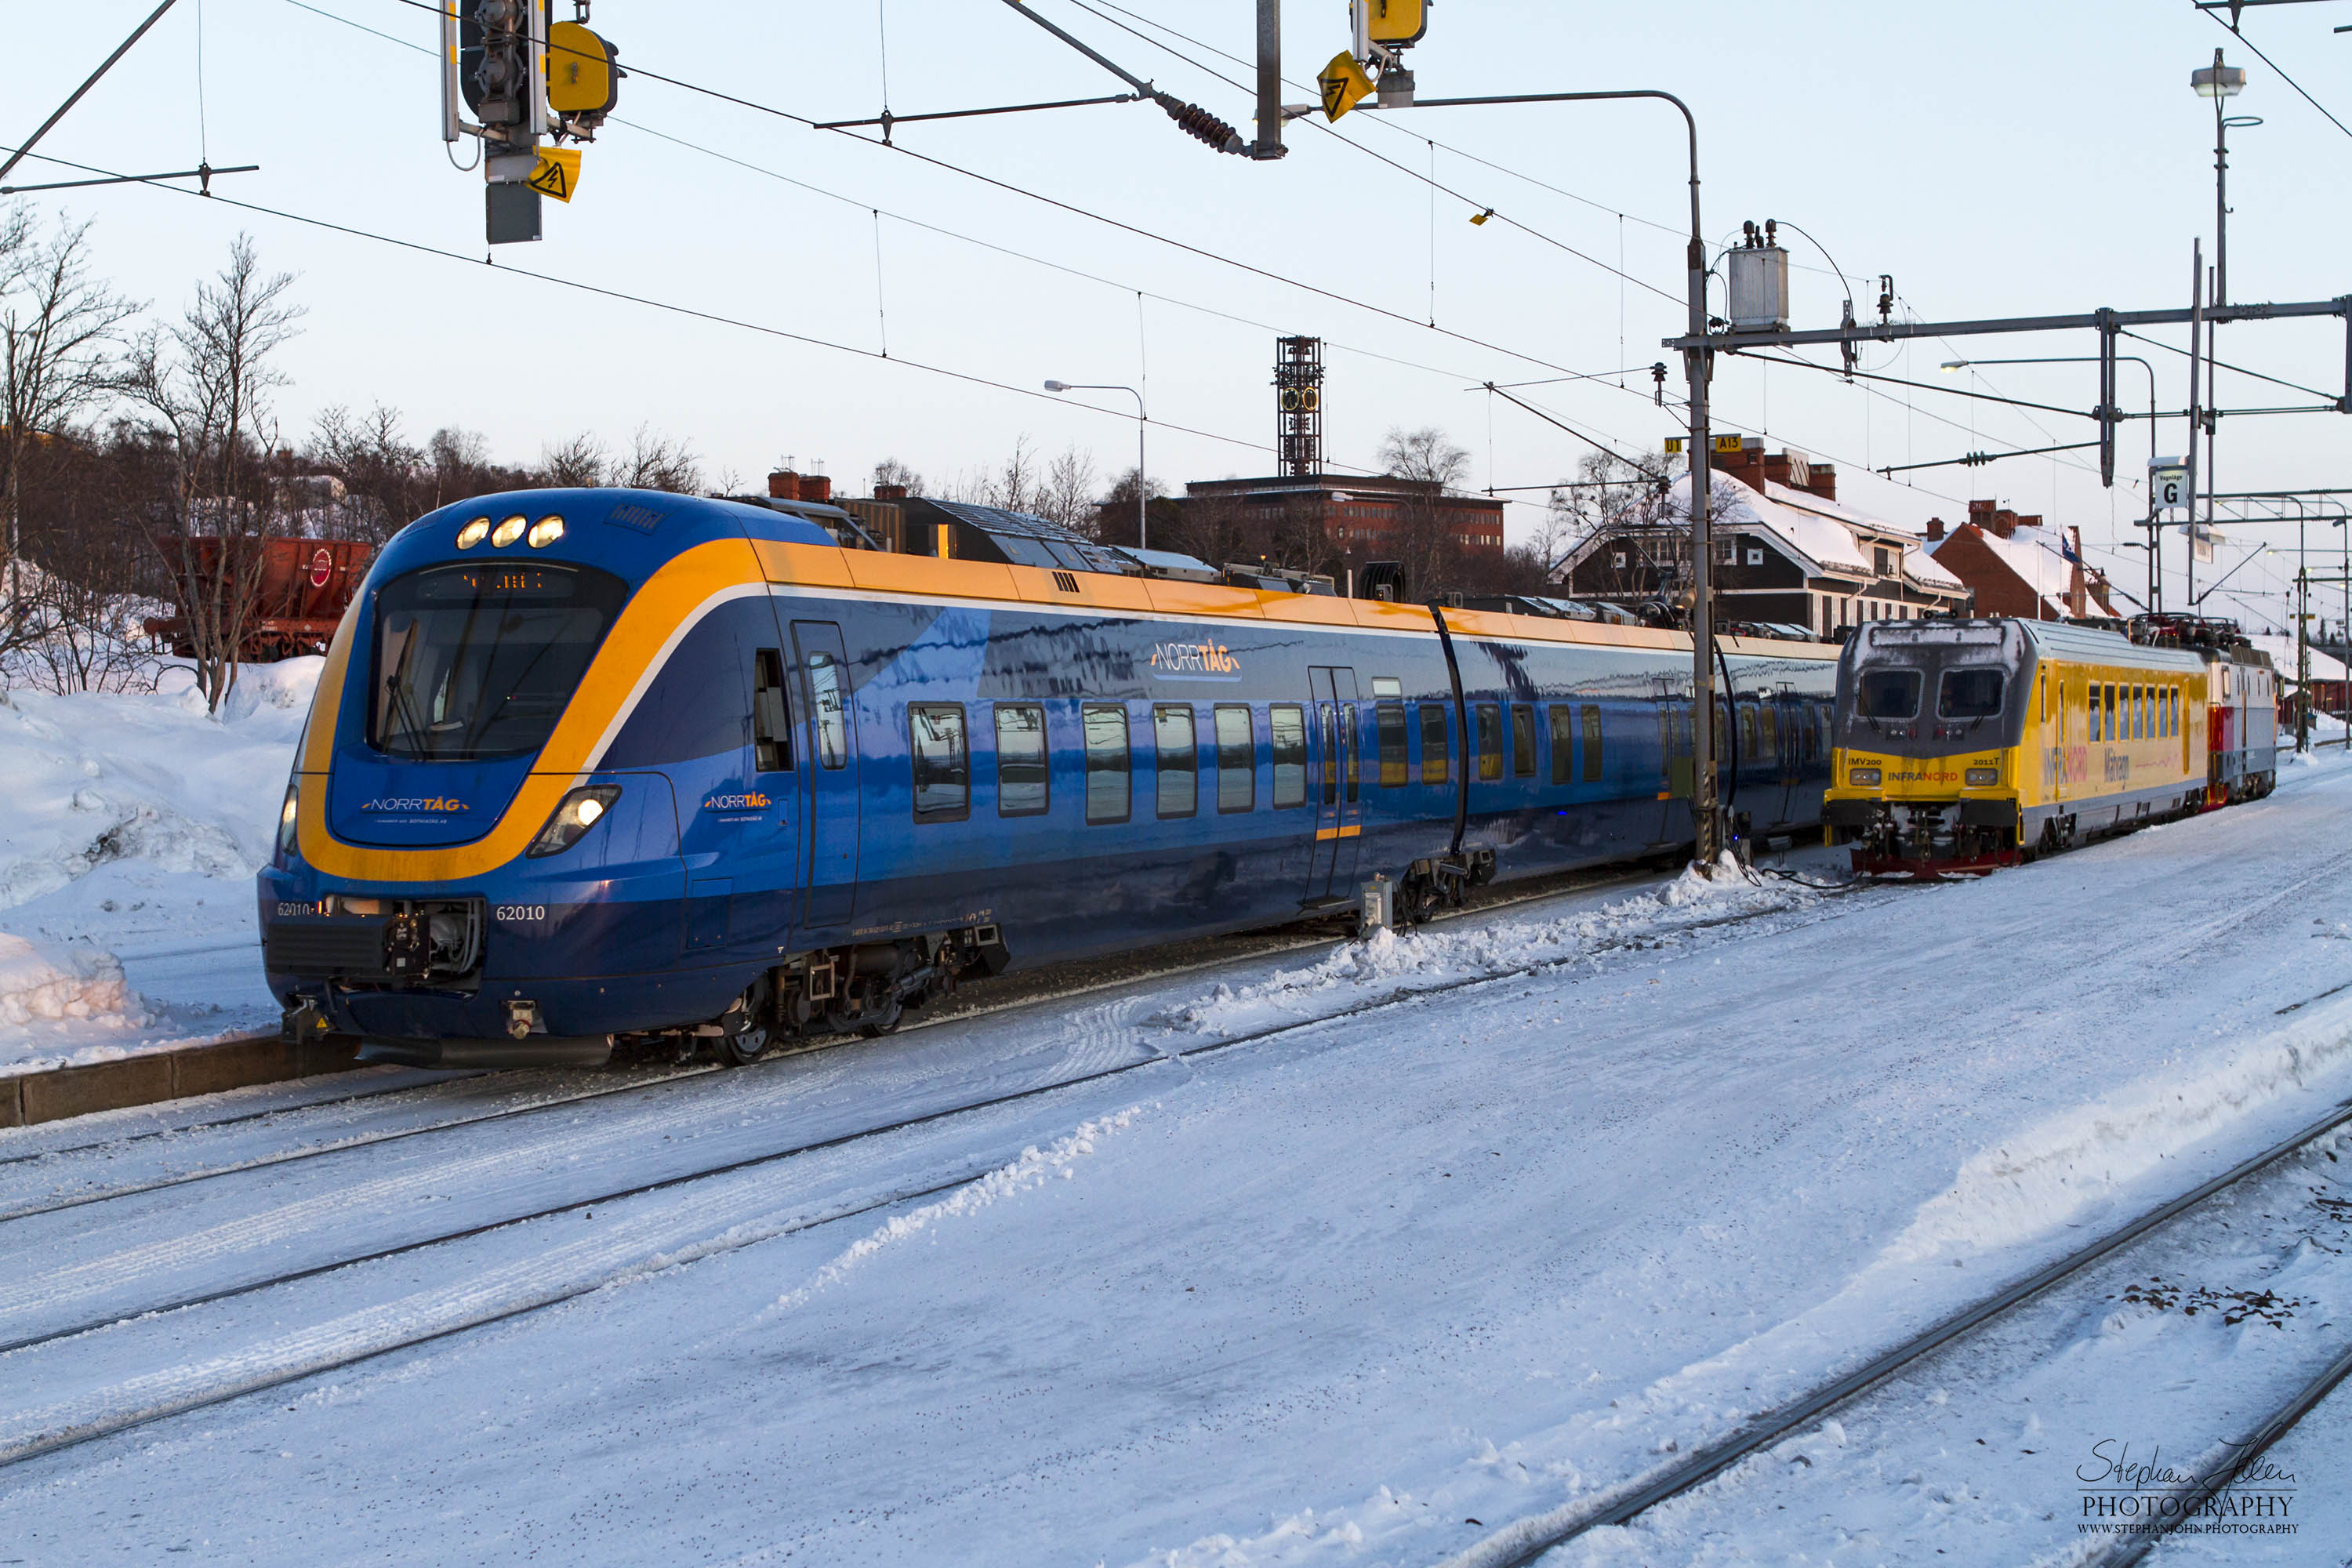 X62 als Norrtåg 7159 (Betreiber: Botniatåg) nach Luleå in der Ausfahrt in Kiruna